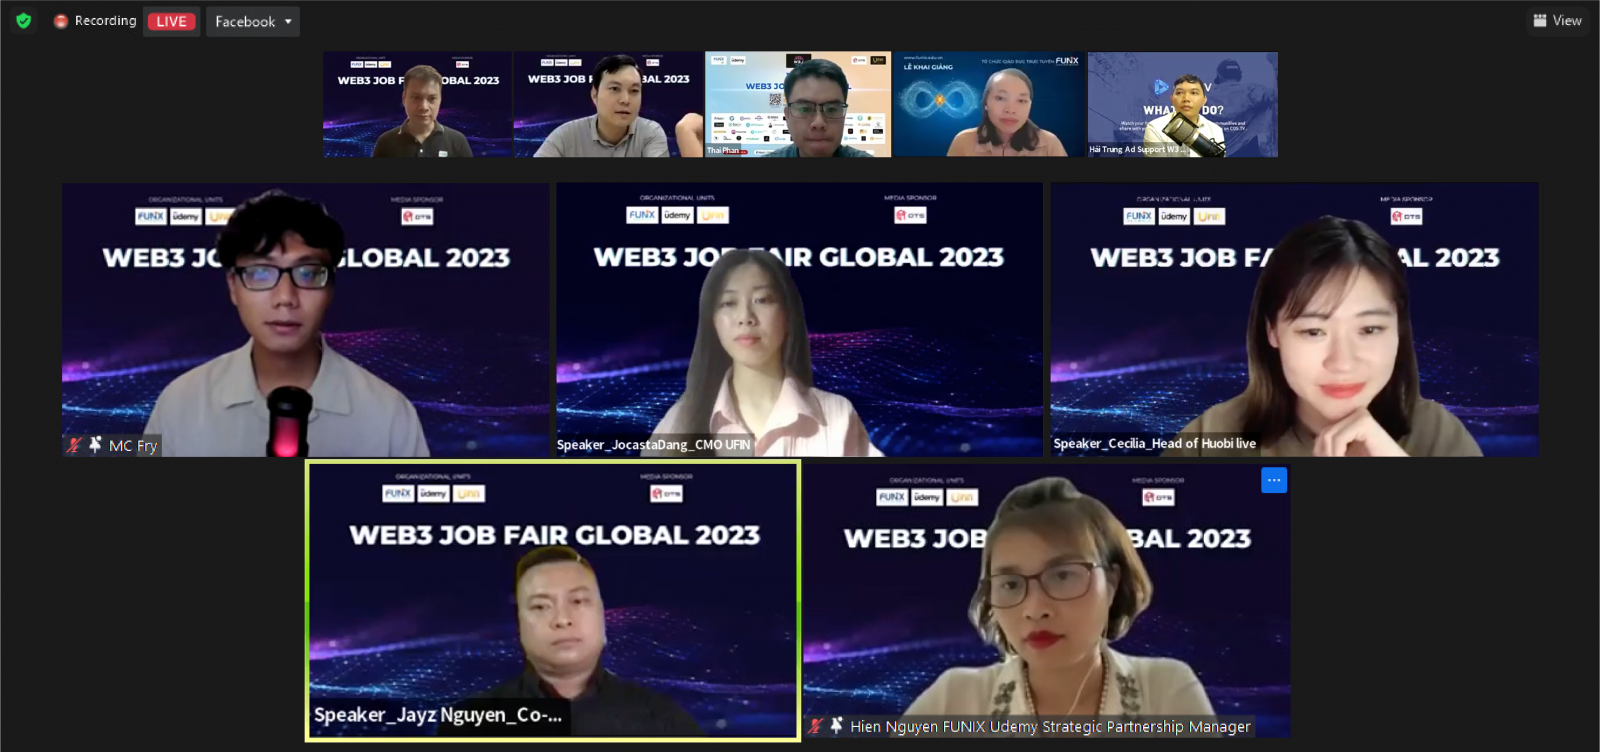 Các chuyên gia nhấn mạnh Web3 cho phép họ tận dụng các kỹ năng và kiến thức chuyên môn của mình trong một môi trường phi tập trung và được kết nối toàn cầu.